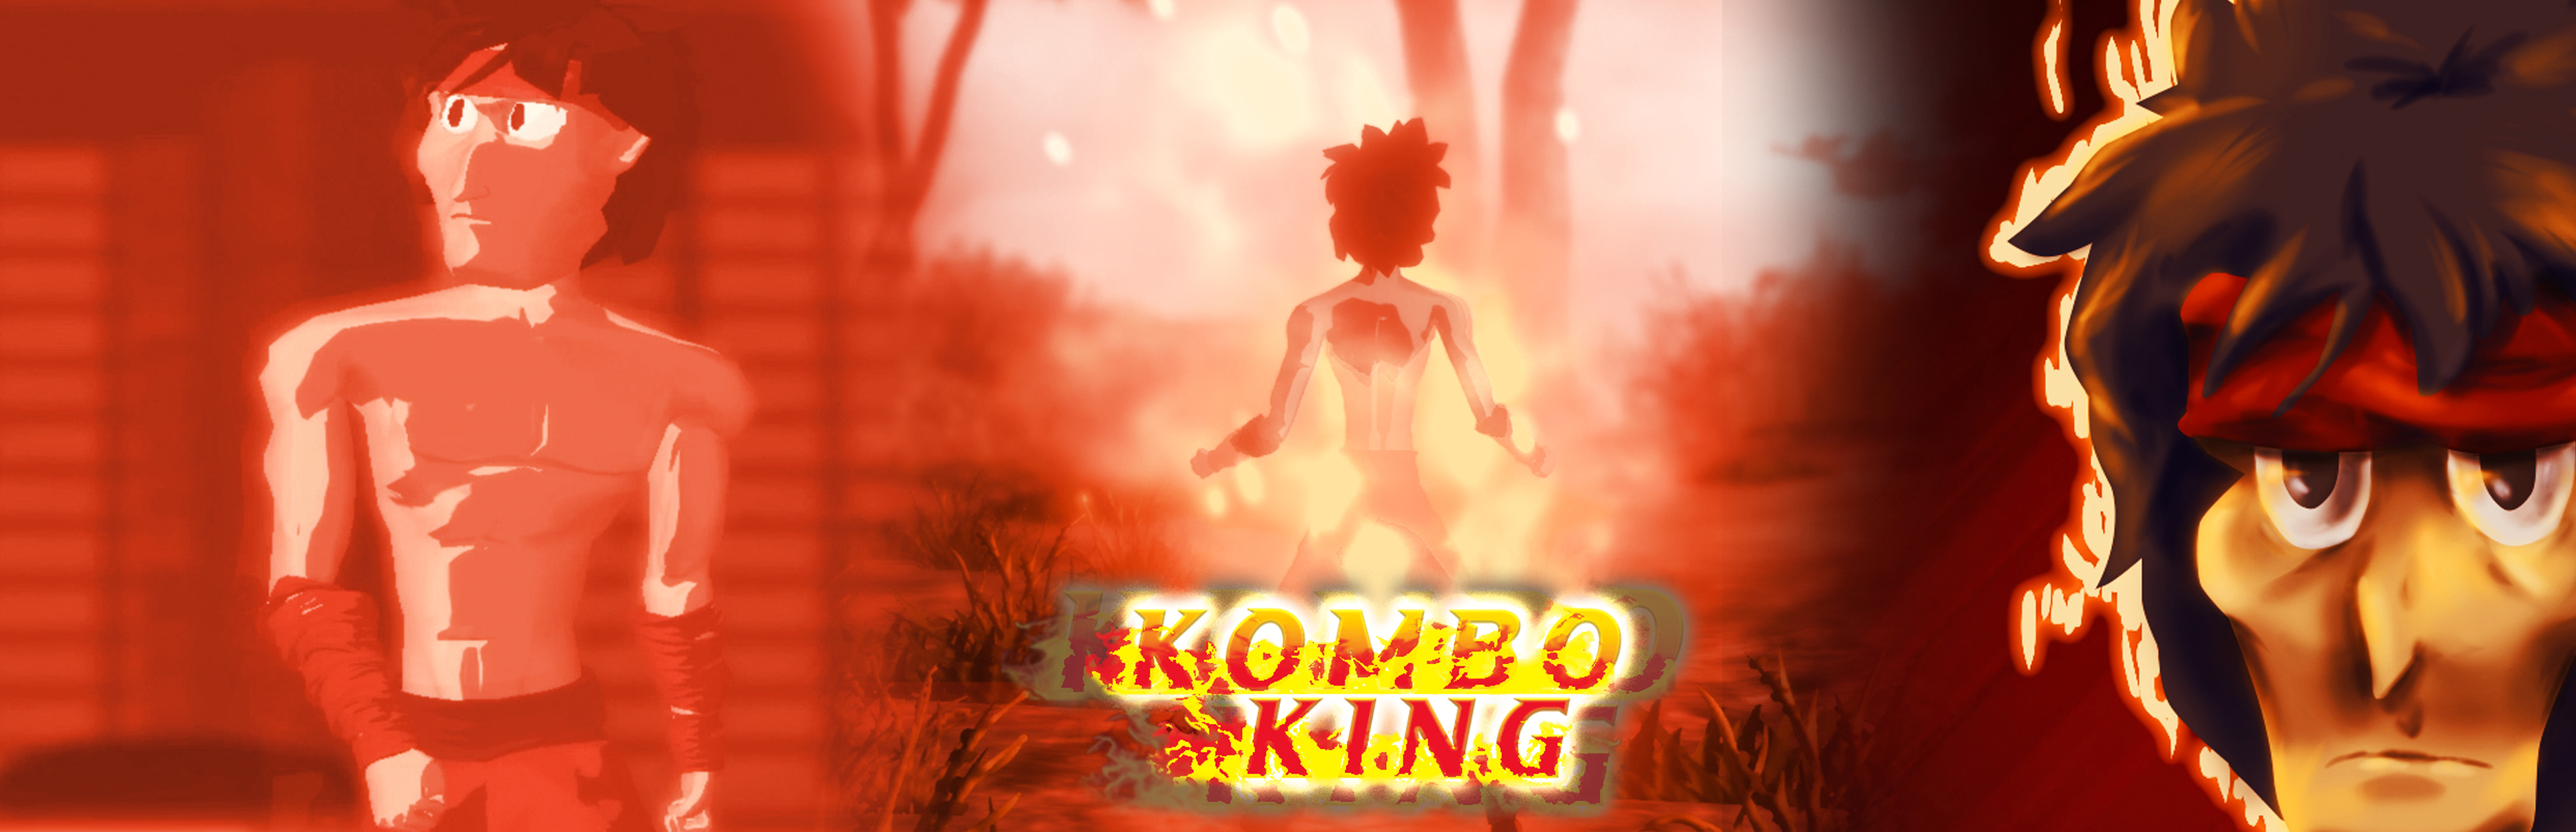 Kombo King